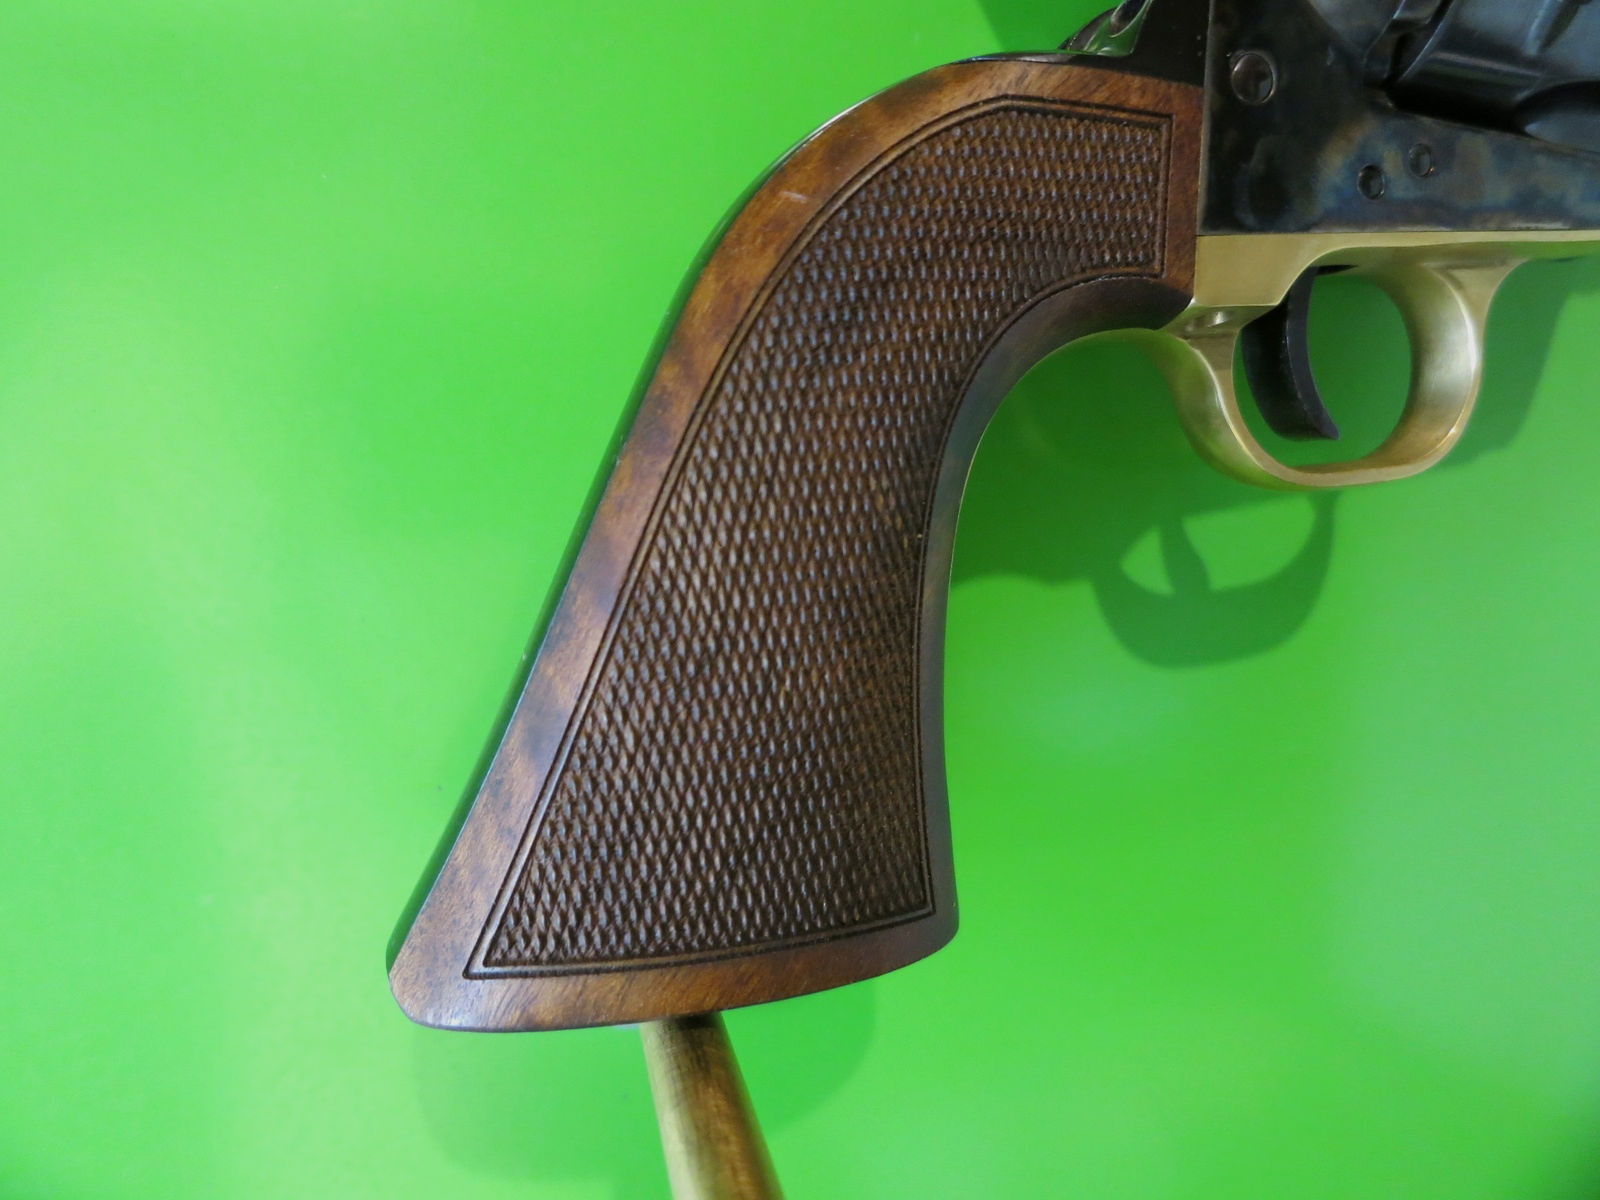 Western-Revolver, F.LLI Pietta, Single Action Revolver 1873 Tombstone I, .45LC     #68